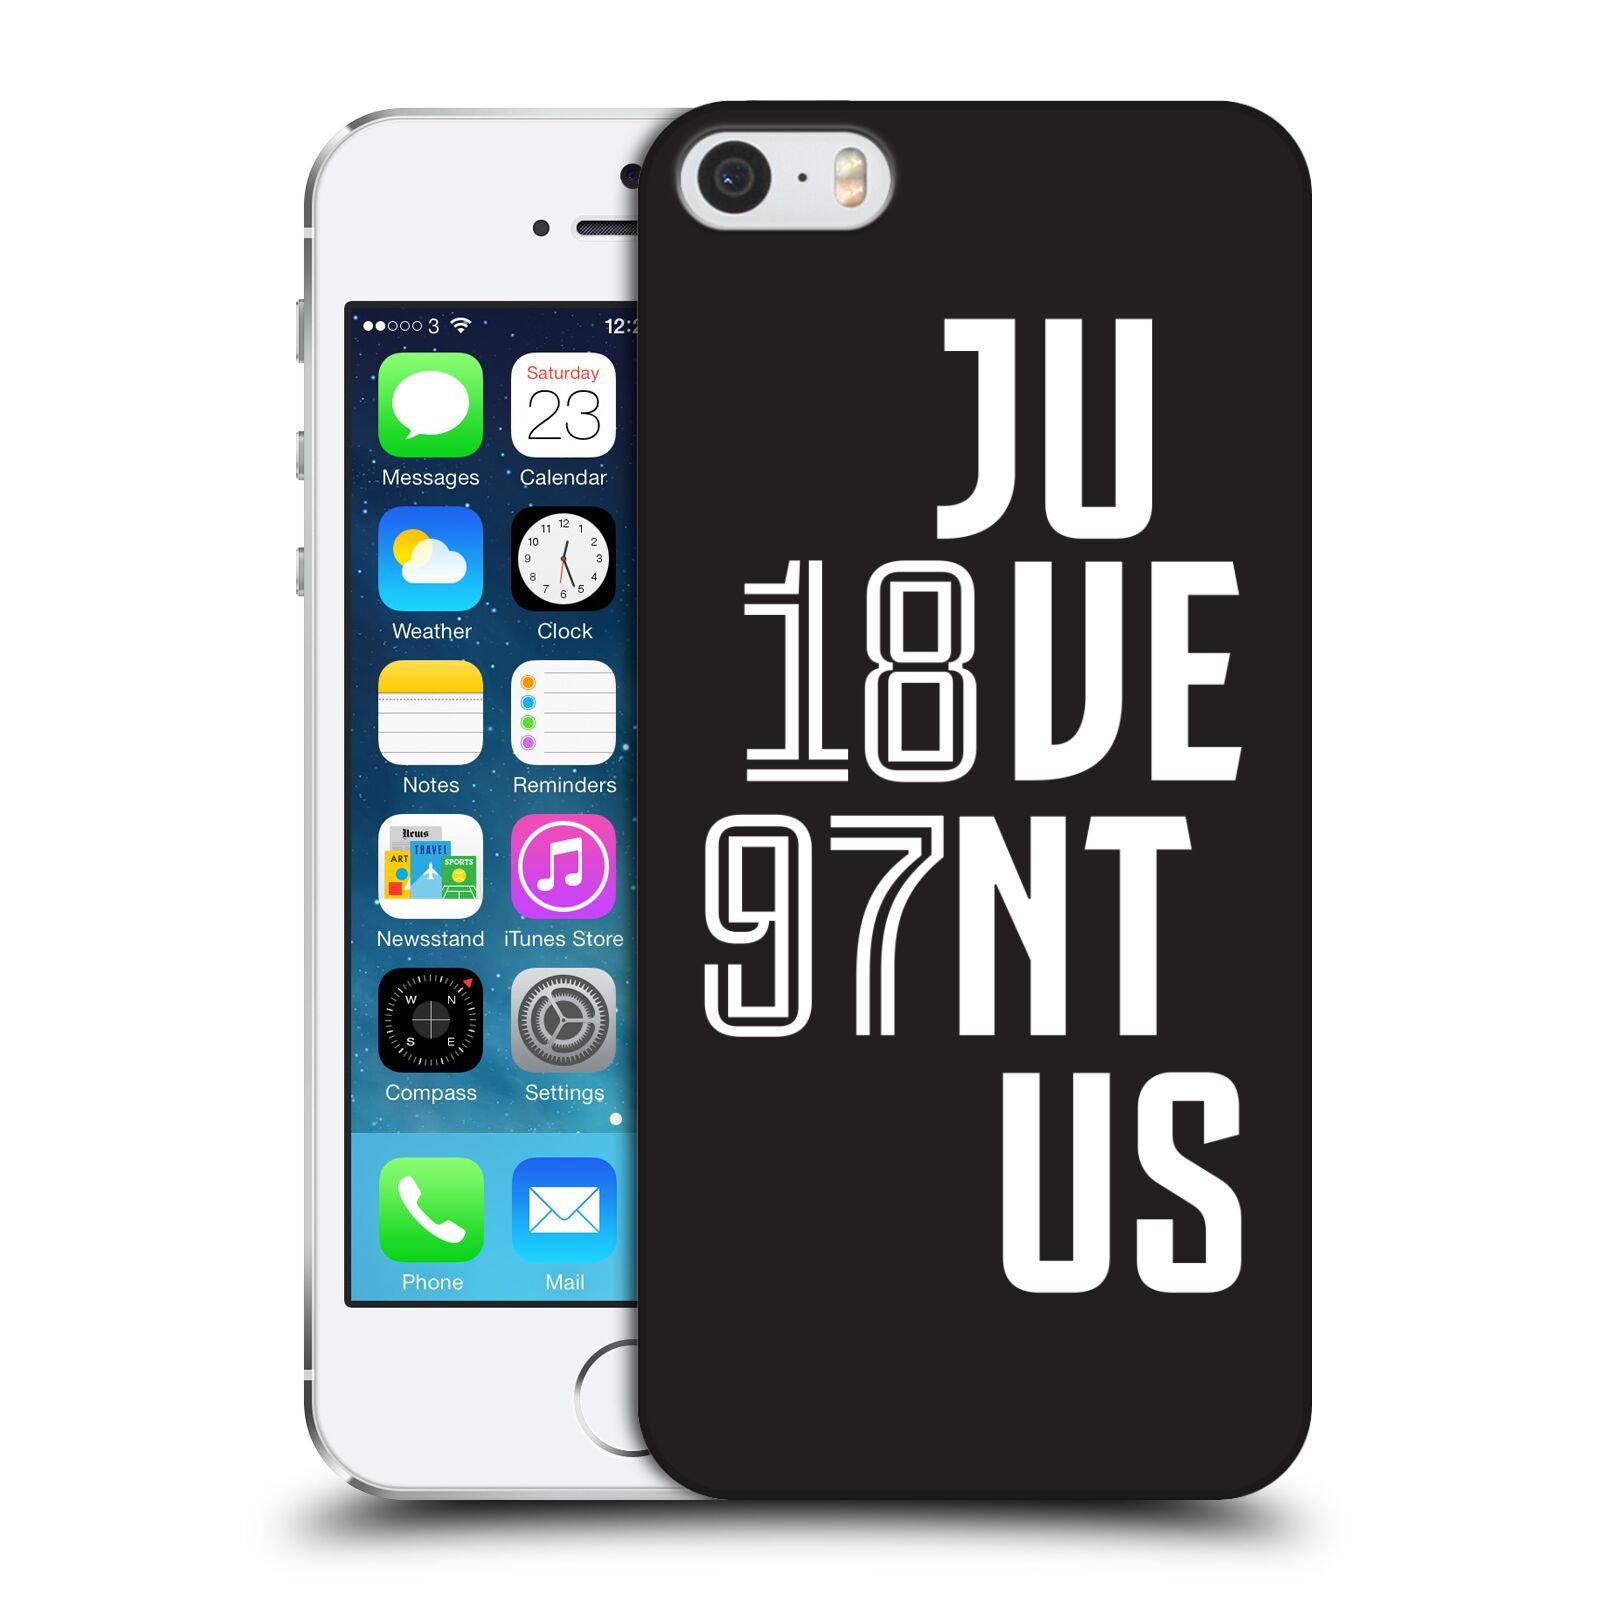 Zadní obal pro mobil Apple Iphone 5/5S/SE 2015 - HEAD CASE - Fotbalový klub Juventus - Velké písmo